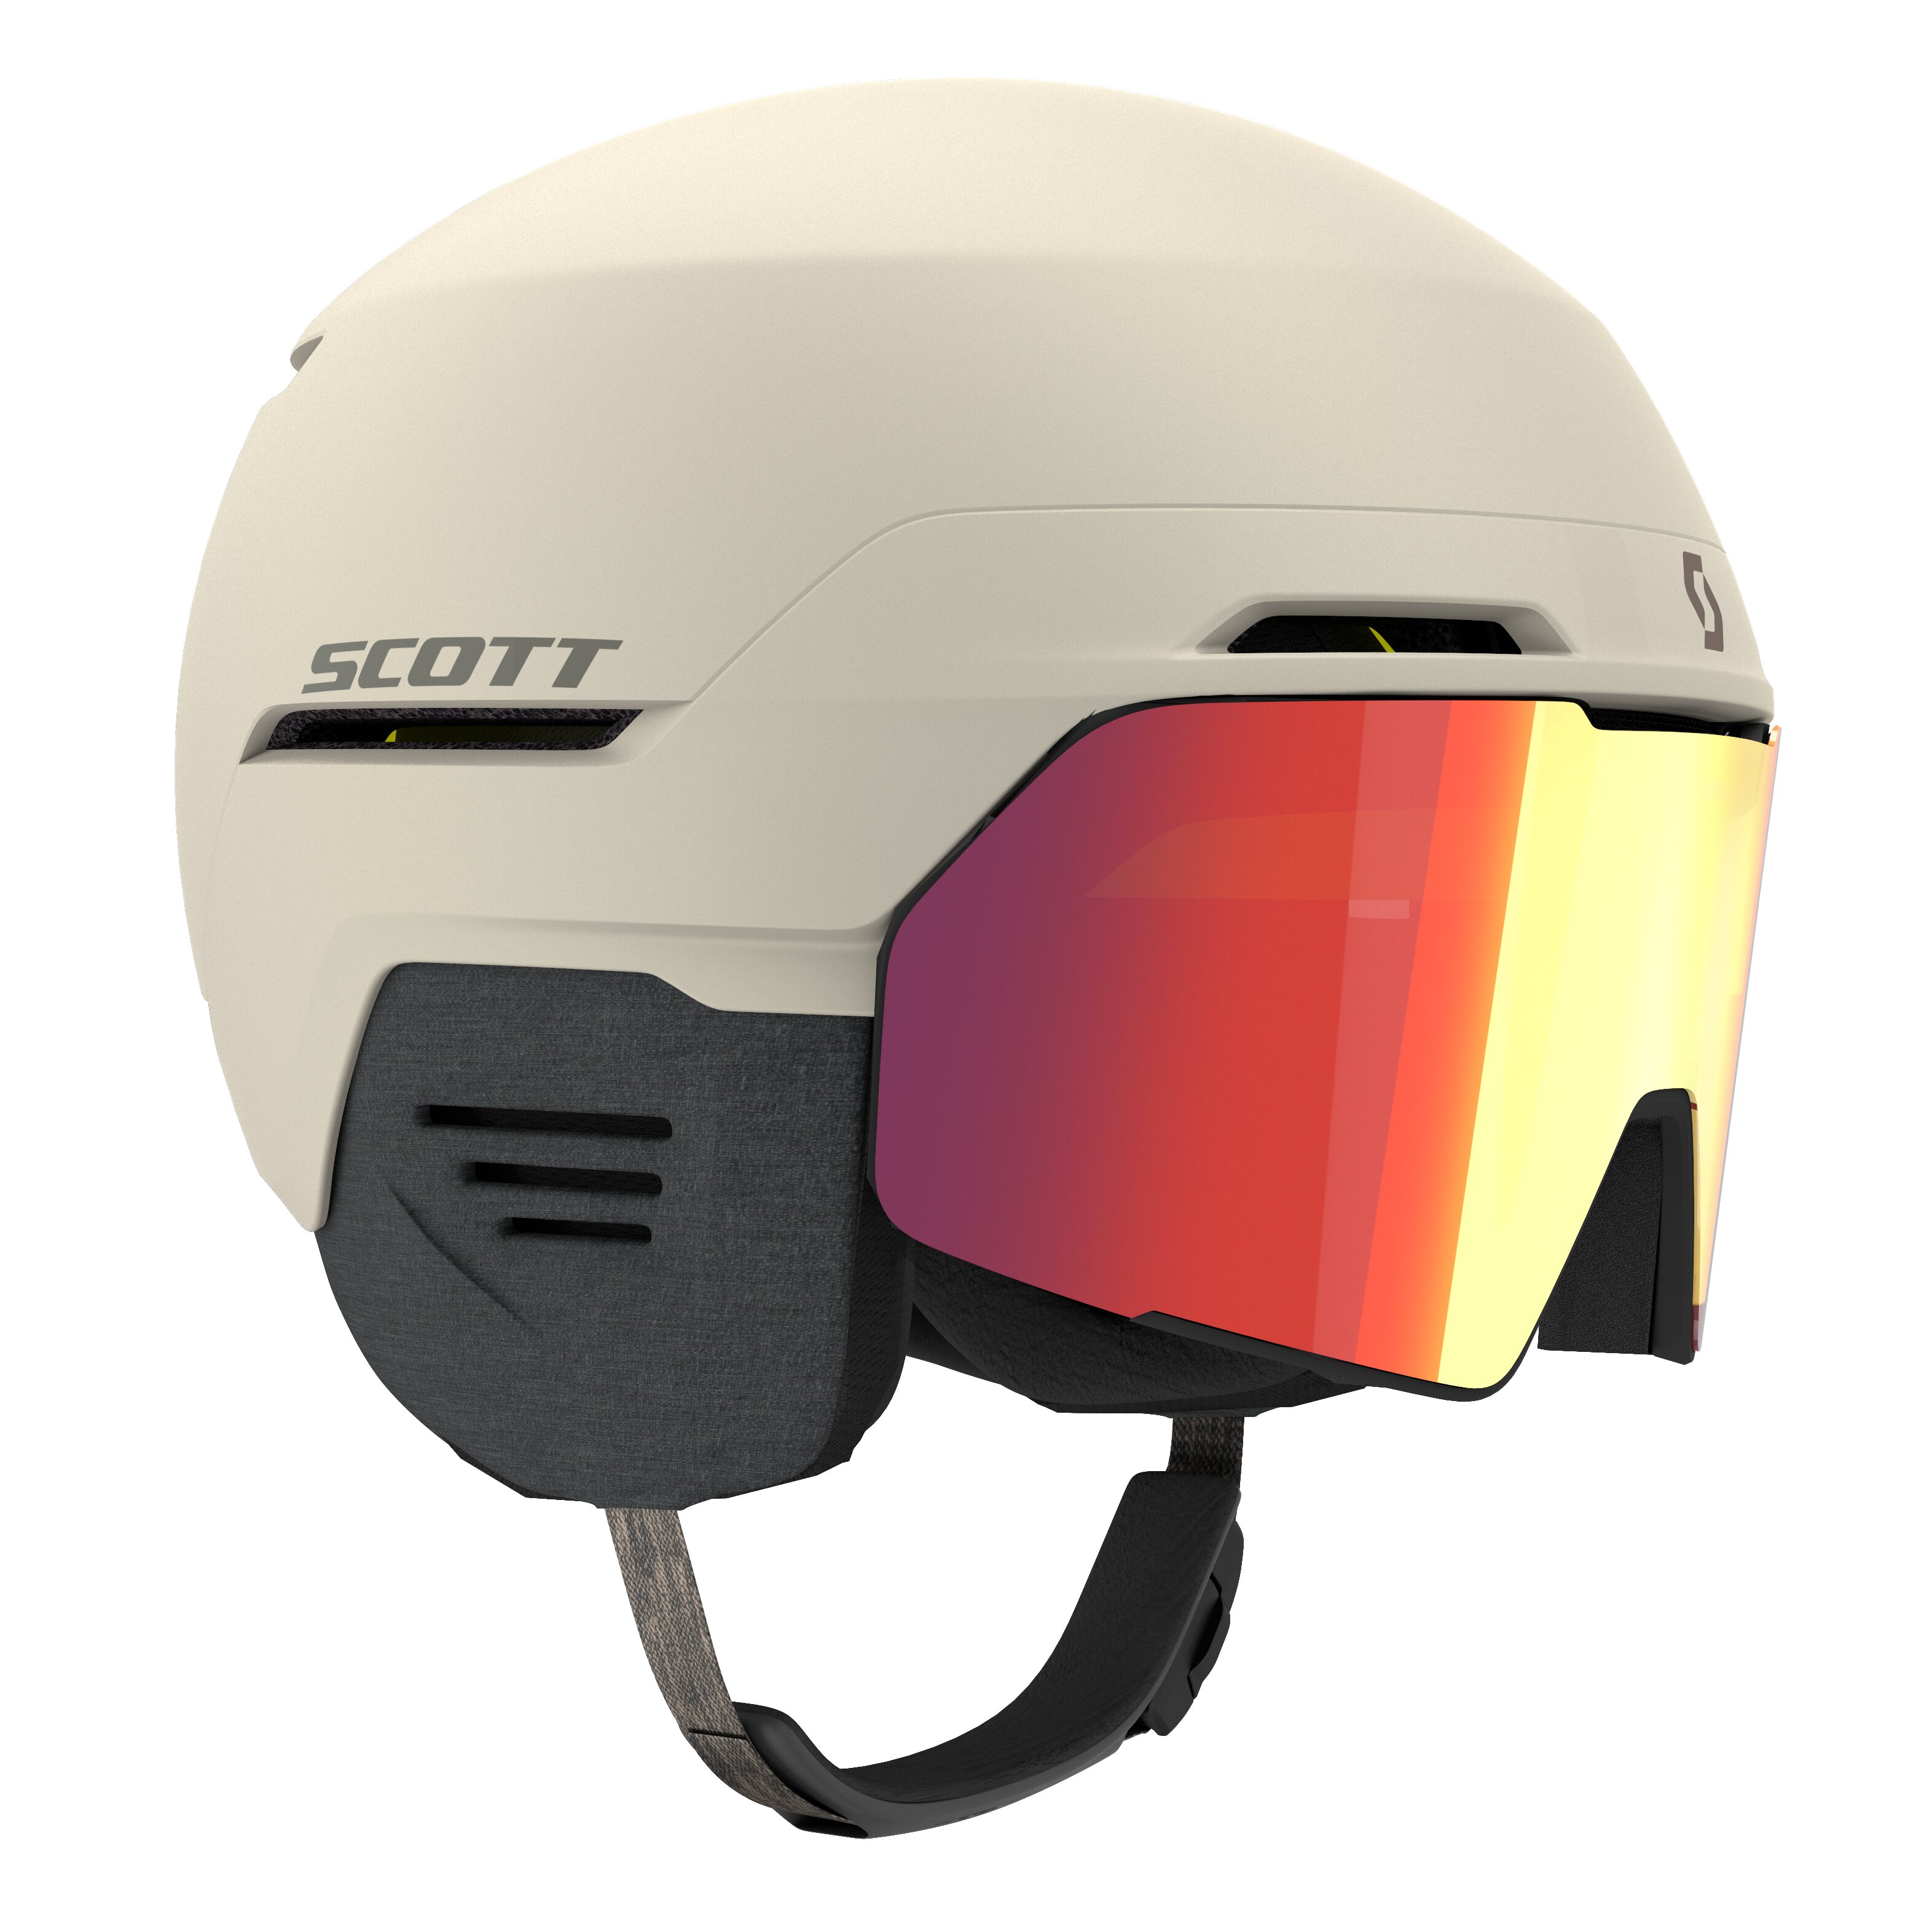 Casque ski visiere, achat casque de ski avec visiere intégrée